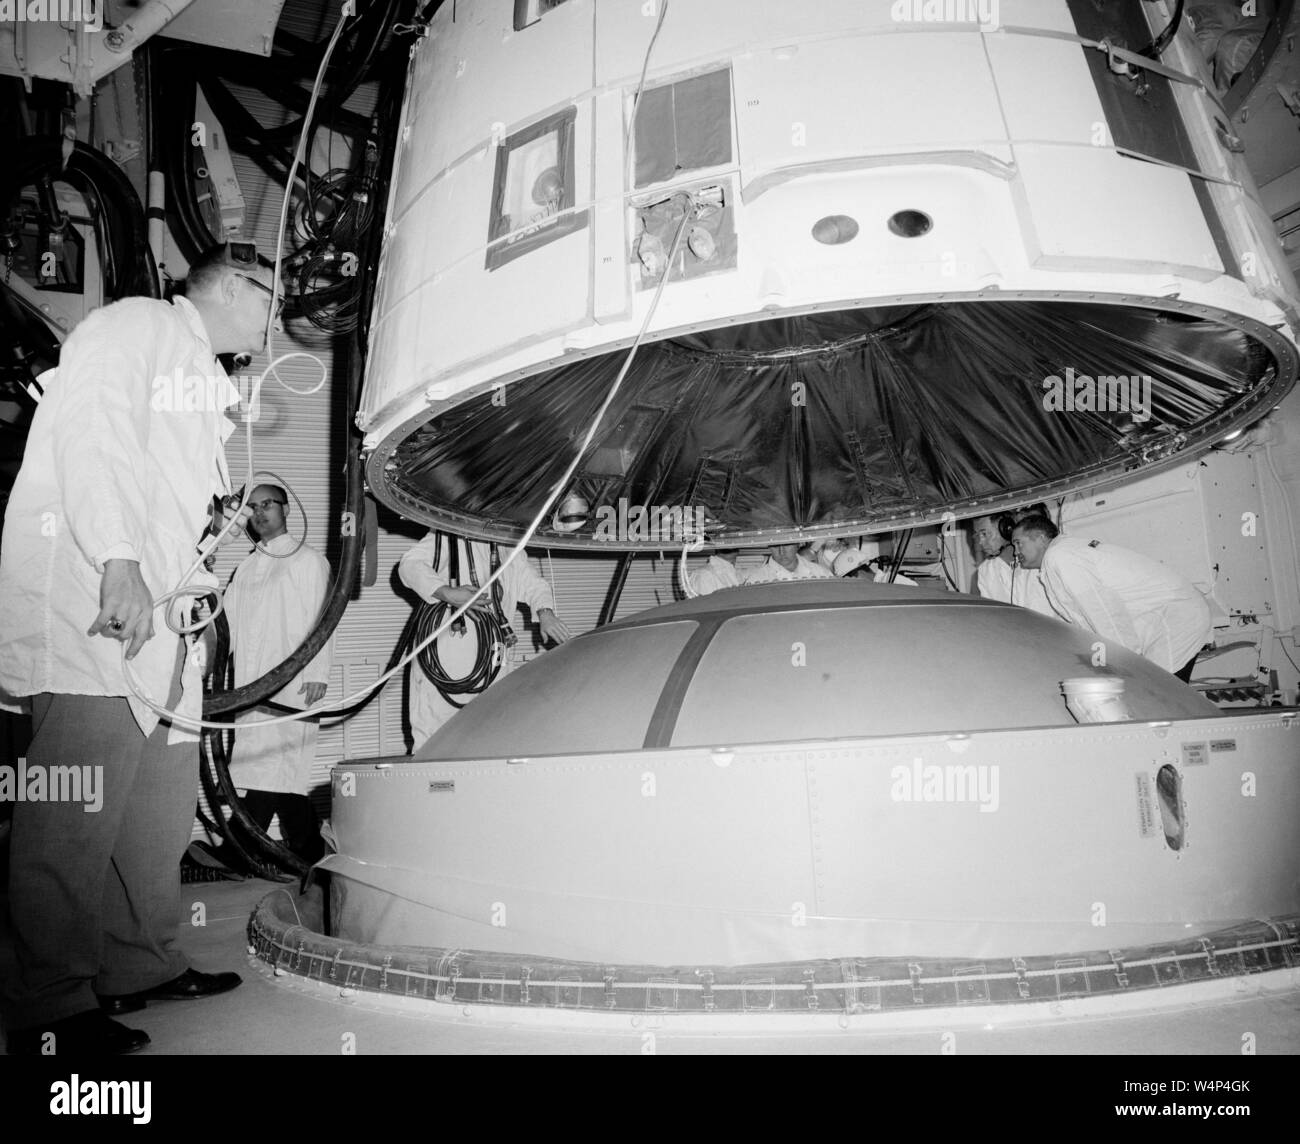 Les ingénieurs de la NASA s'accoupler avec le vaisseau spatial Gemini III Titan II dans la chambre blanche de la Pad 19 au Centre spatial Kennedy, Merritt Island, Florida, Février, 1965. Droit avec la permission de la National Aeronautics and Space Administration (NASA). () Banque D'Images